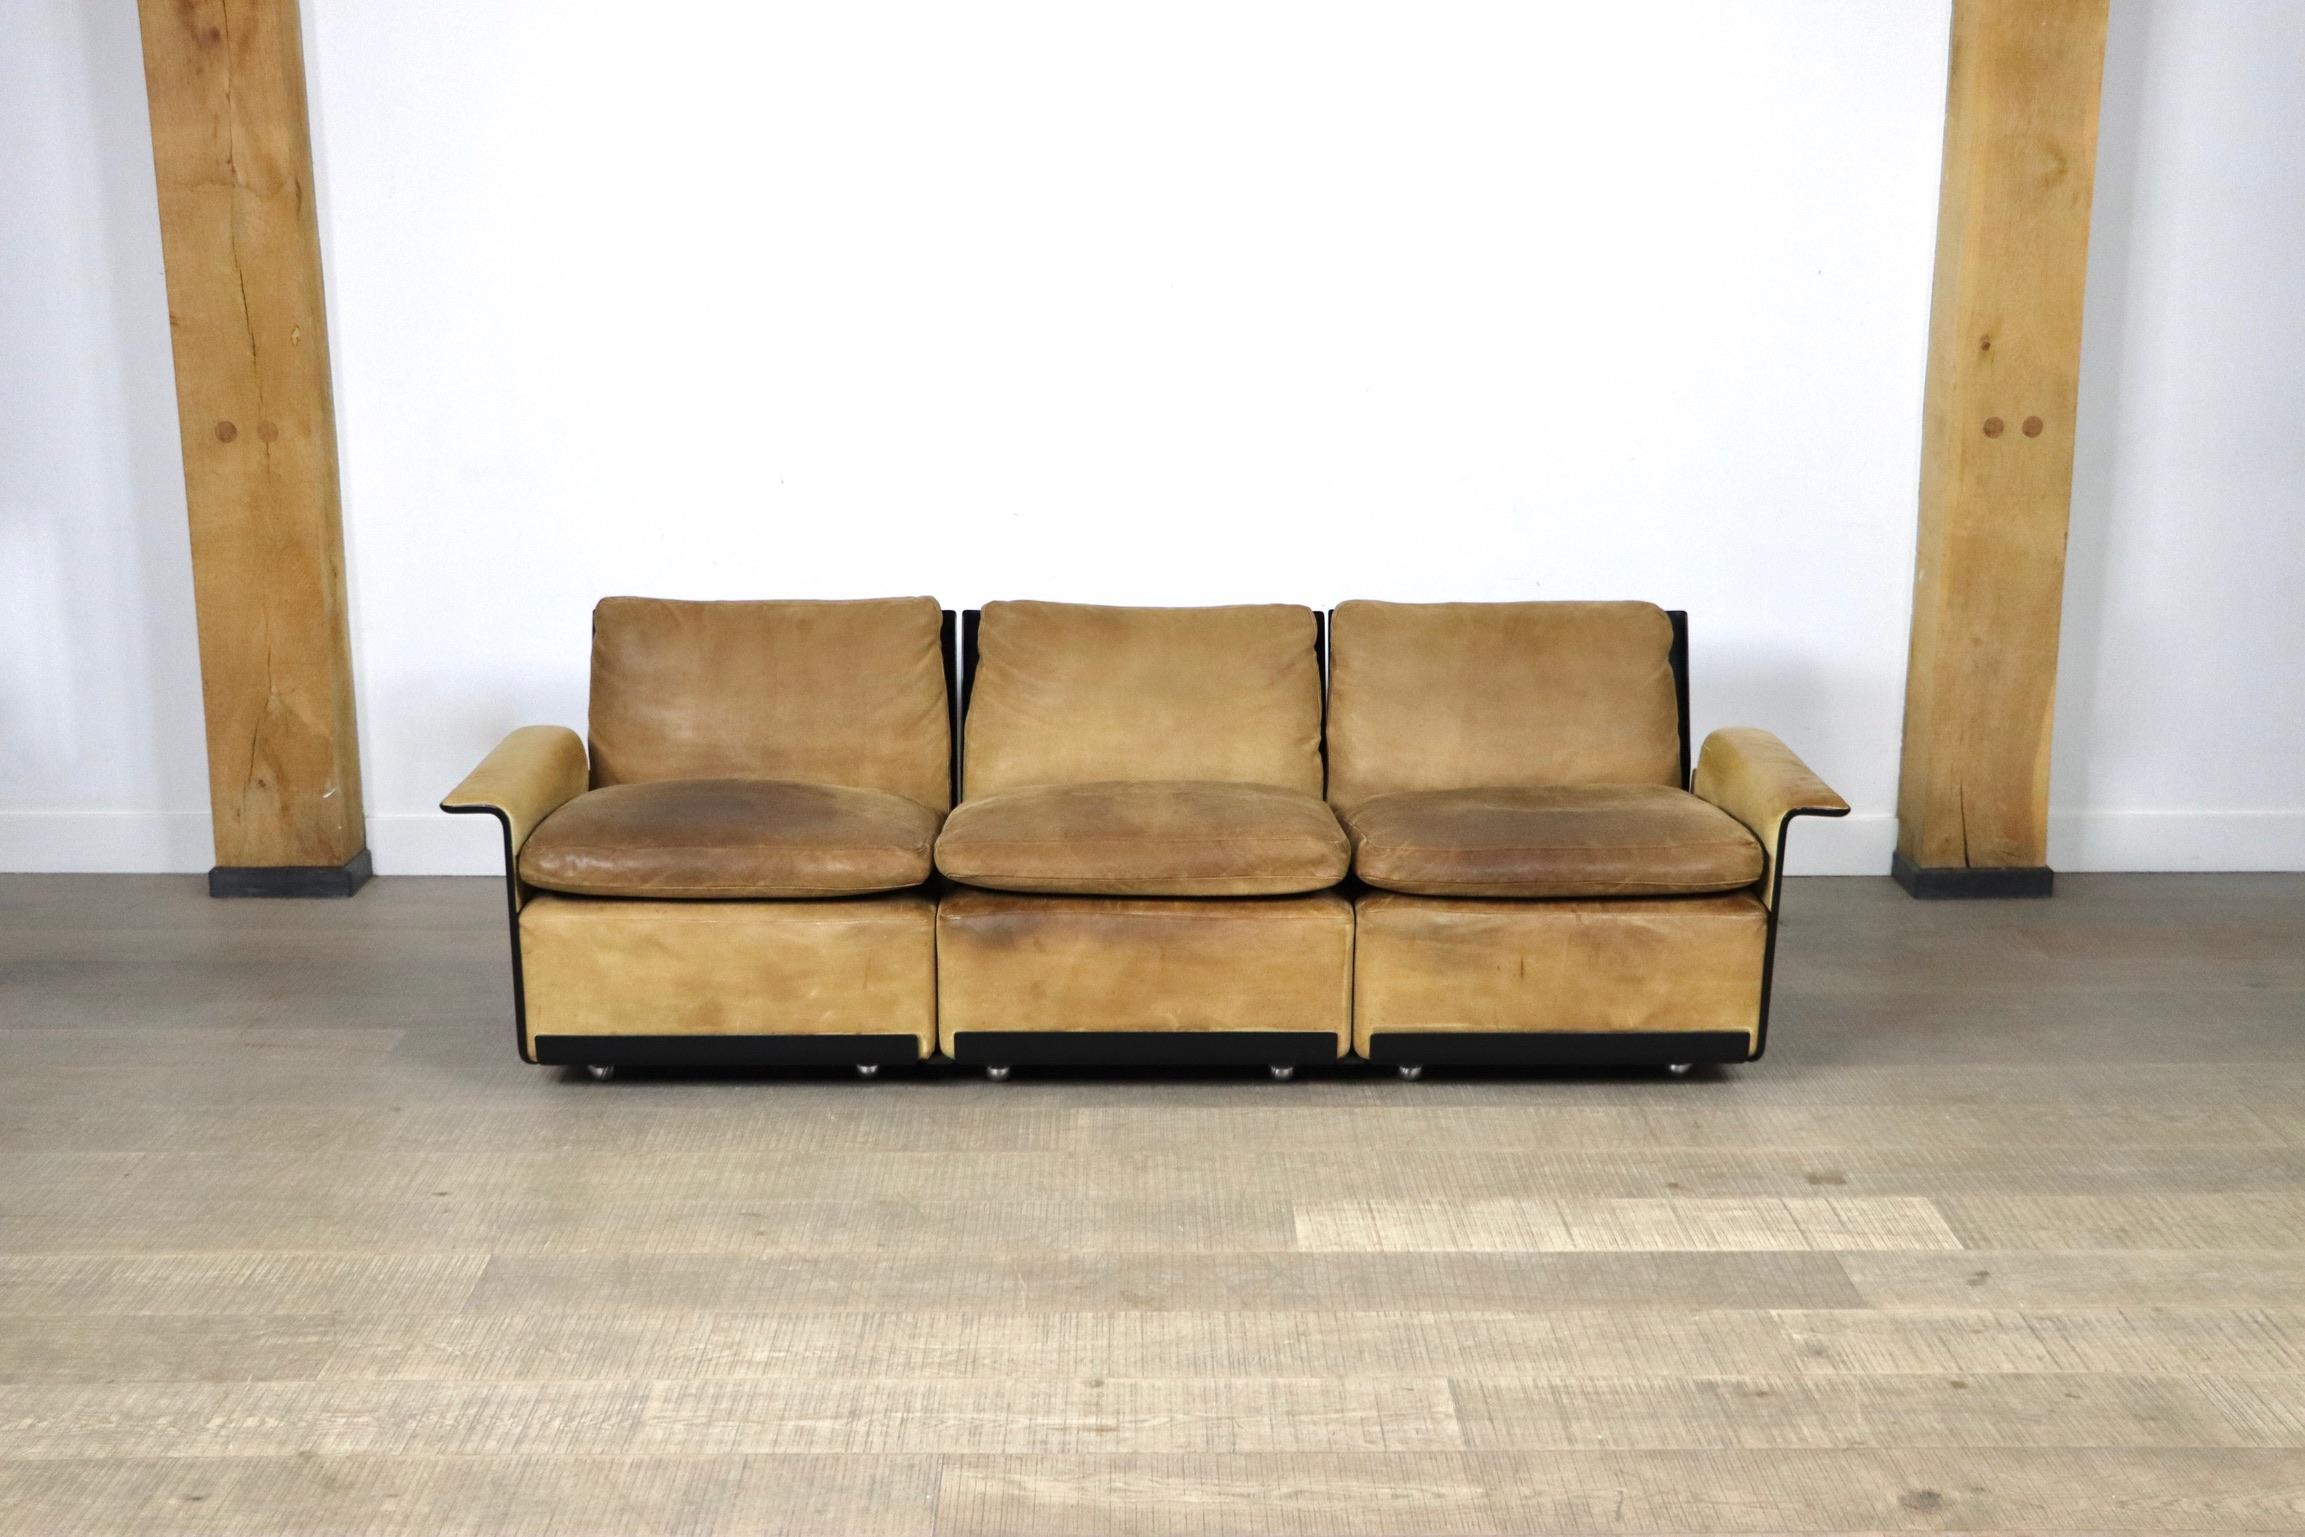 Ikonisches Sofa von Dieter Rams für Vitsoe. Die schwarze Außenhülle besteht aus einer heißgepressten Formmasse, die ähnlich wie Glasfaser ist, aber stärker als diese. Ursprünglich mit hochwertigem, weichem Cognac-Leder gepolstert, das Generationen